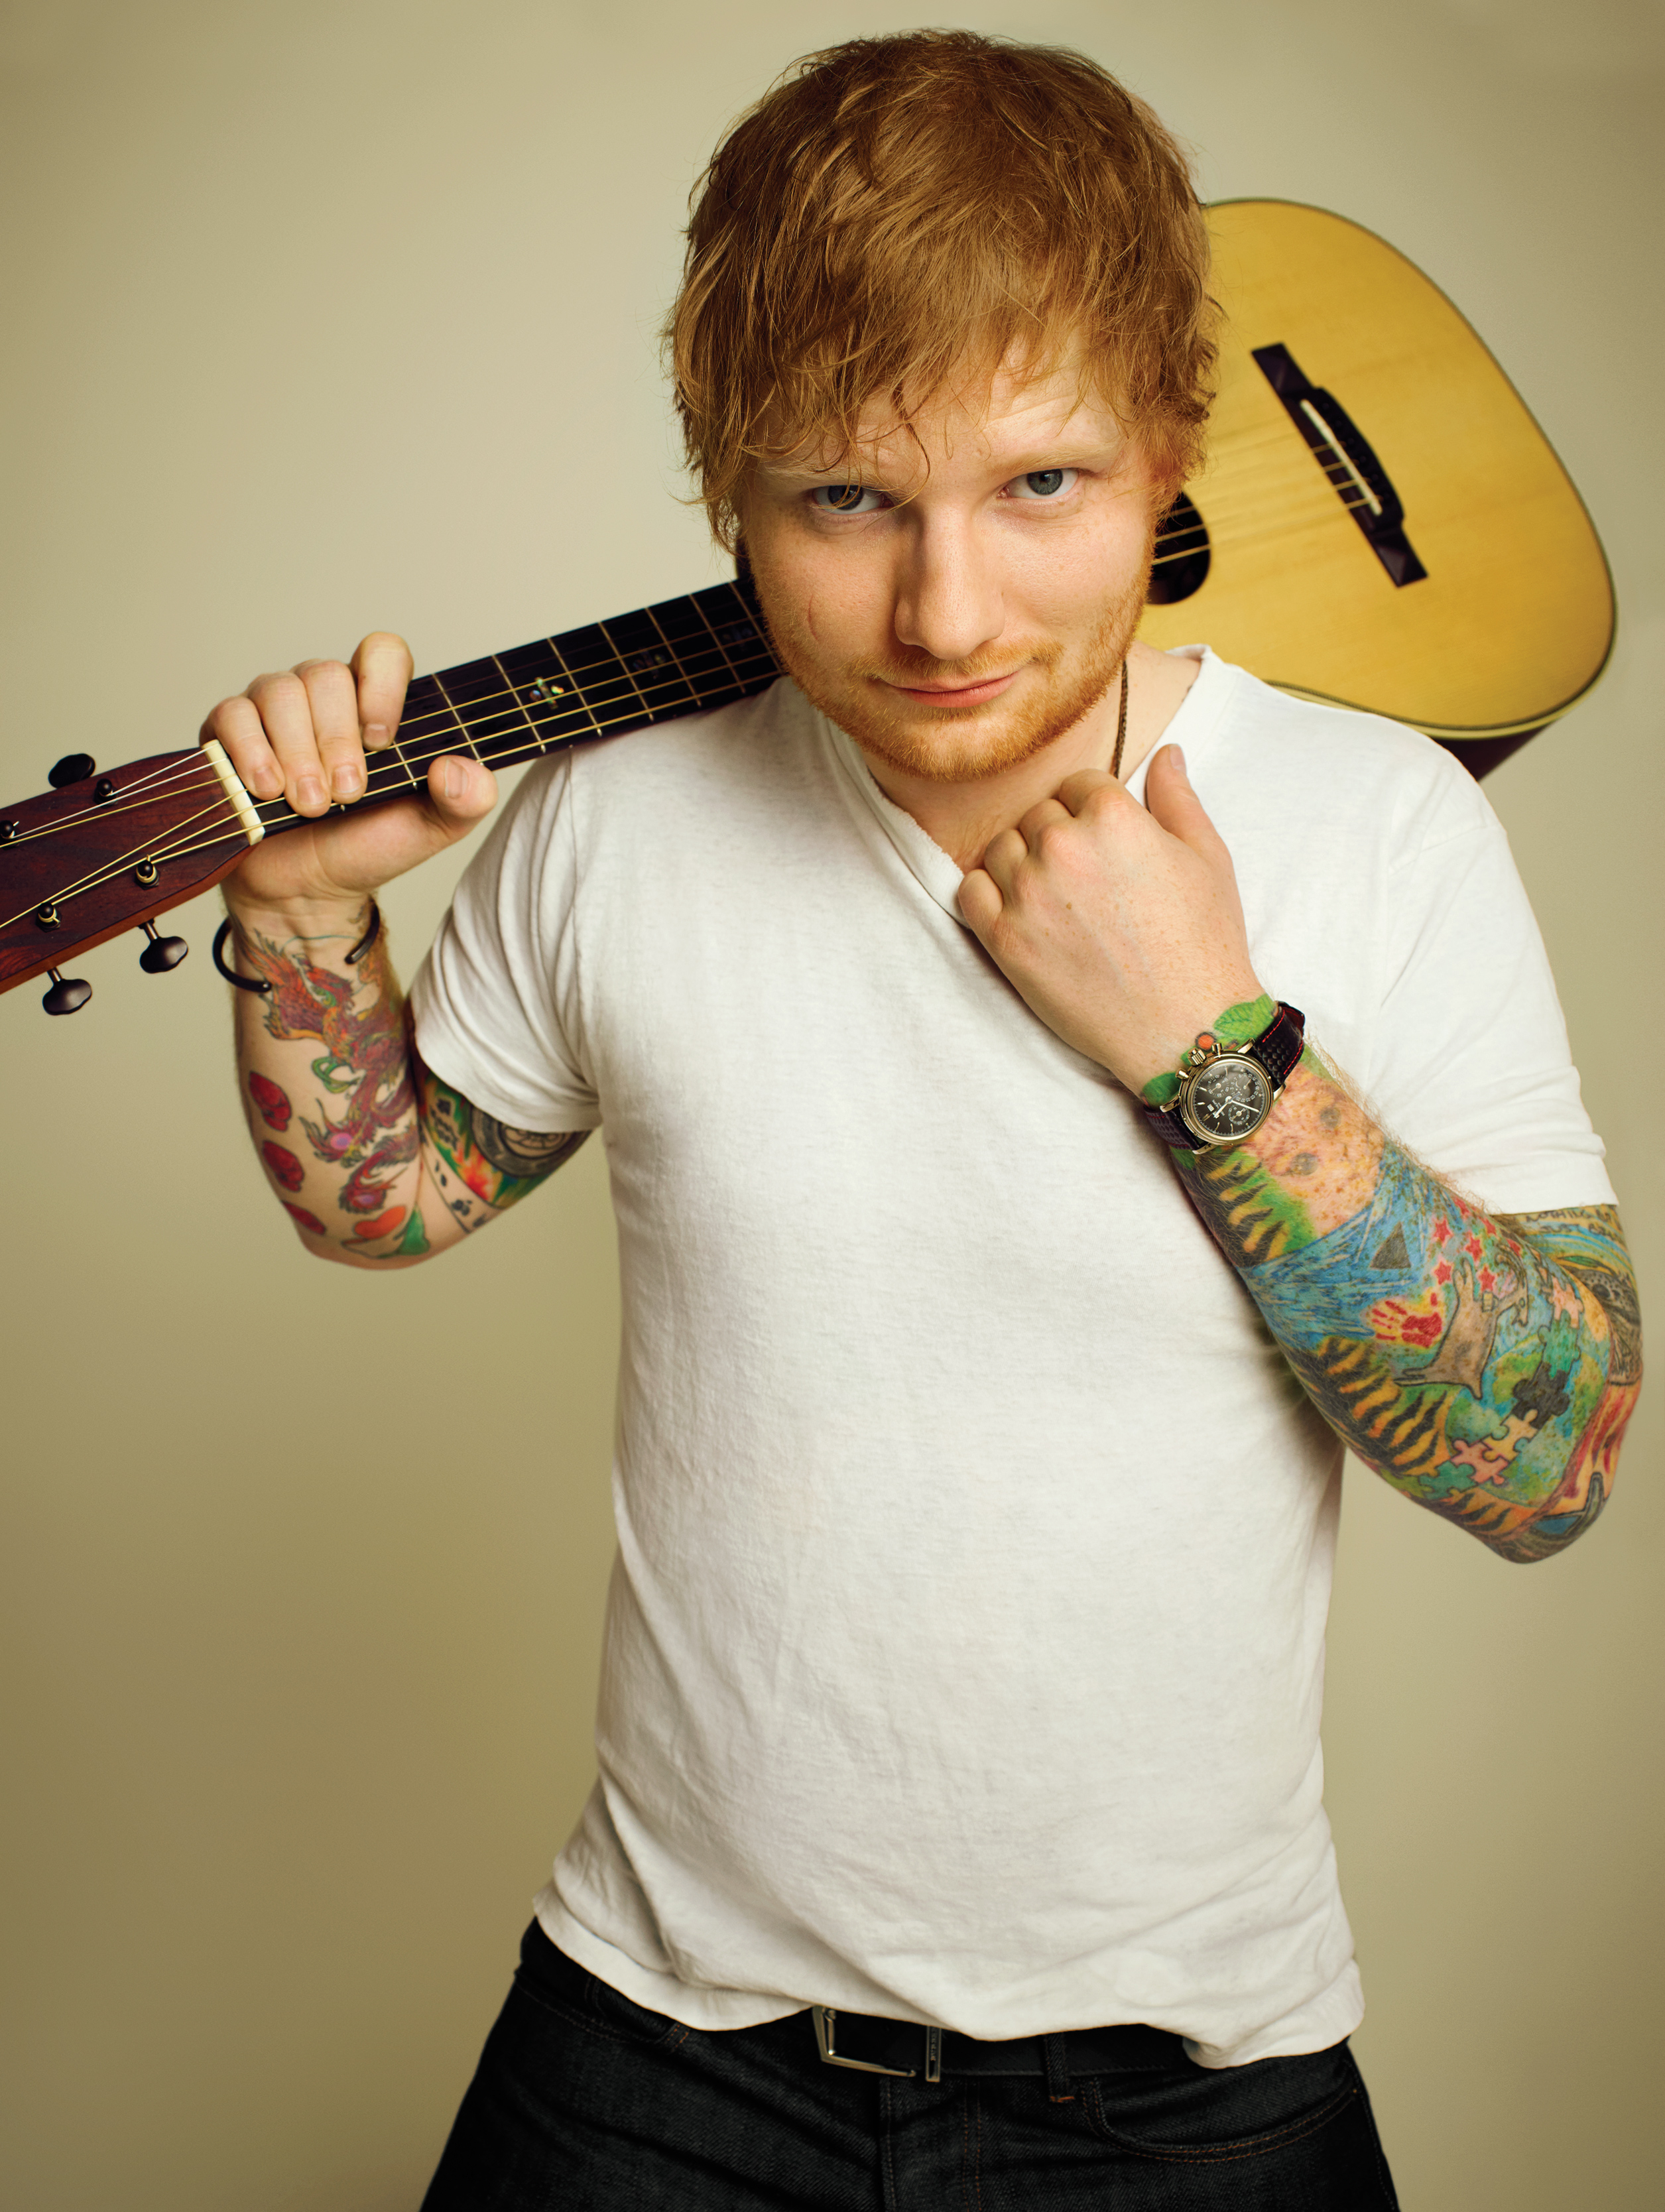 Ed Sheeran Autumn Leaves chords